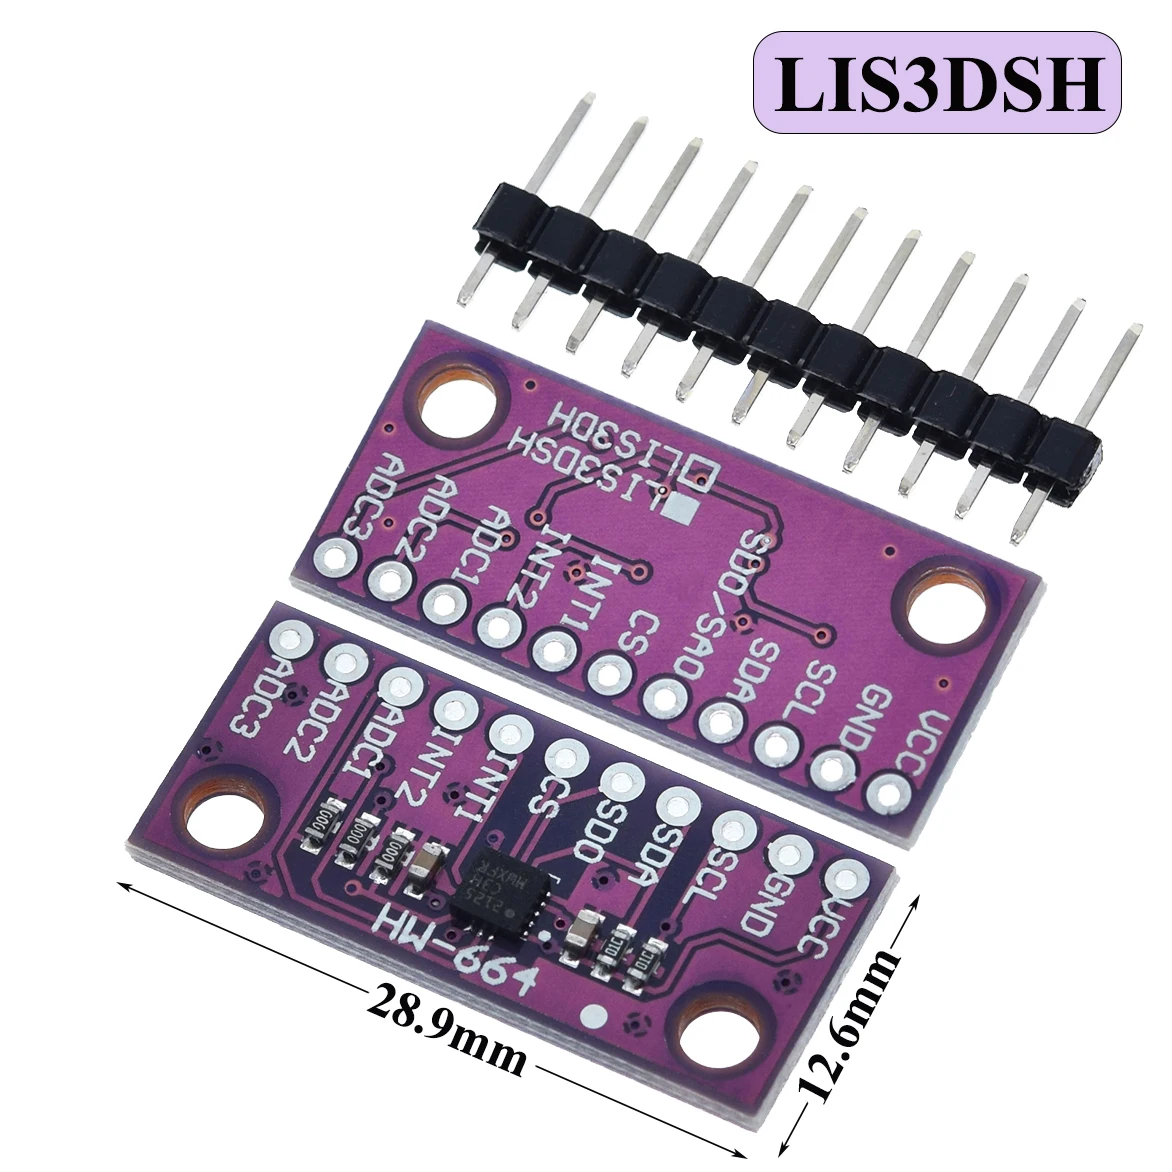 lis3dsh-–-accelerometre-triaxial-a-trois-axes-haute-resolution-module-pour-arduino